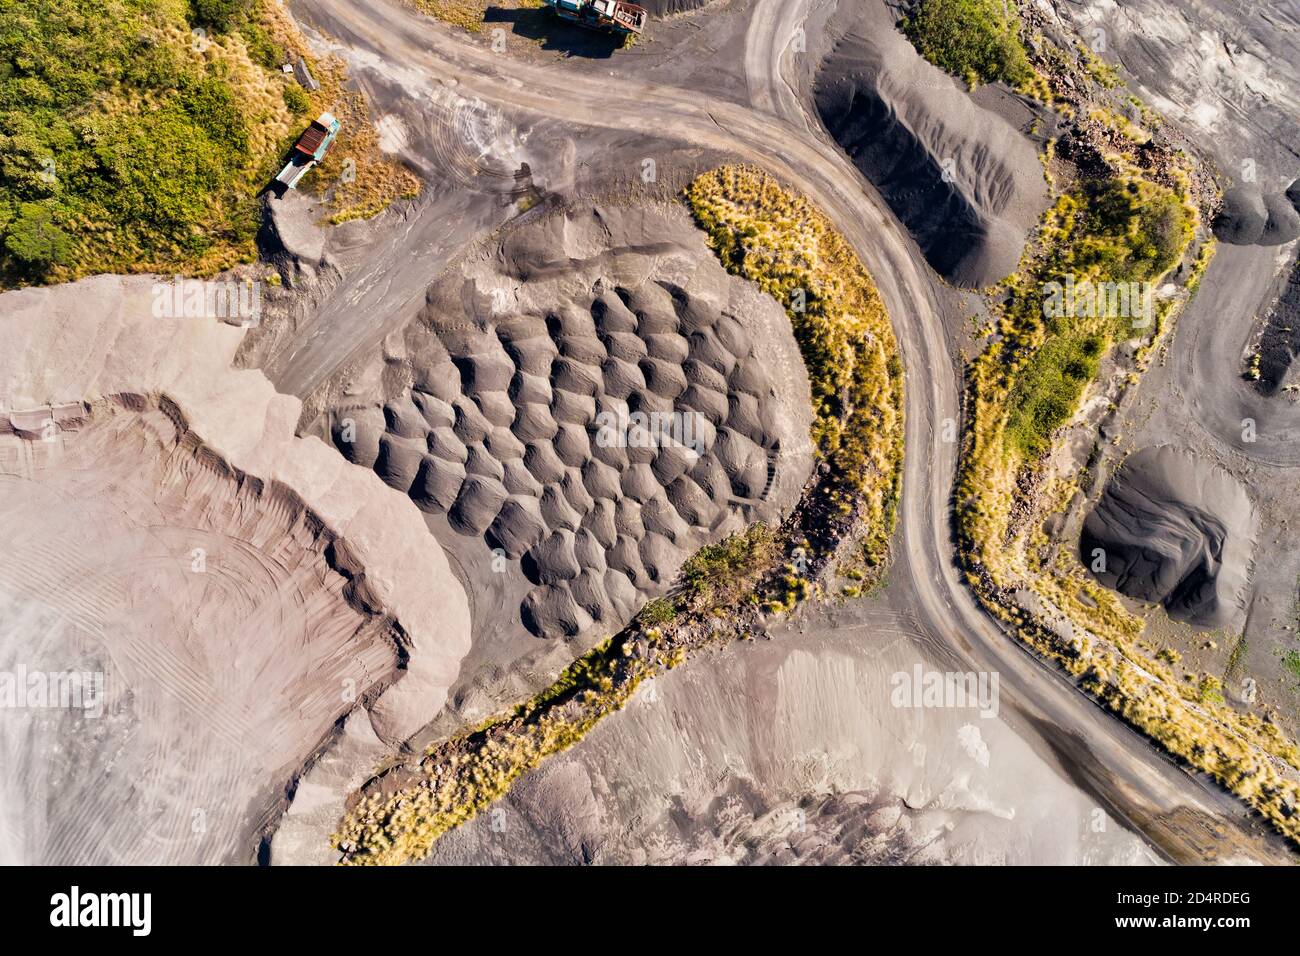 Bas de la carrière de Bombo site d'excavation de basalte en Nouvelle-Galles du Sud, Australie près de Kiama - vue aérienne de dessus en bas. Banque D'Images